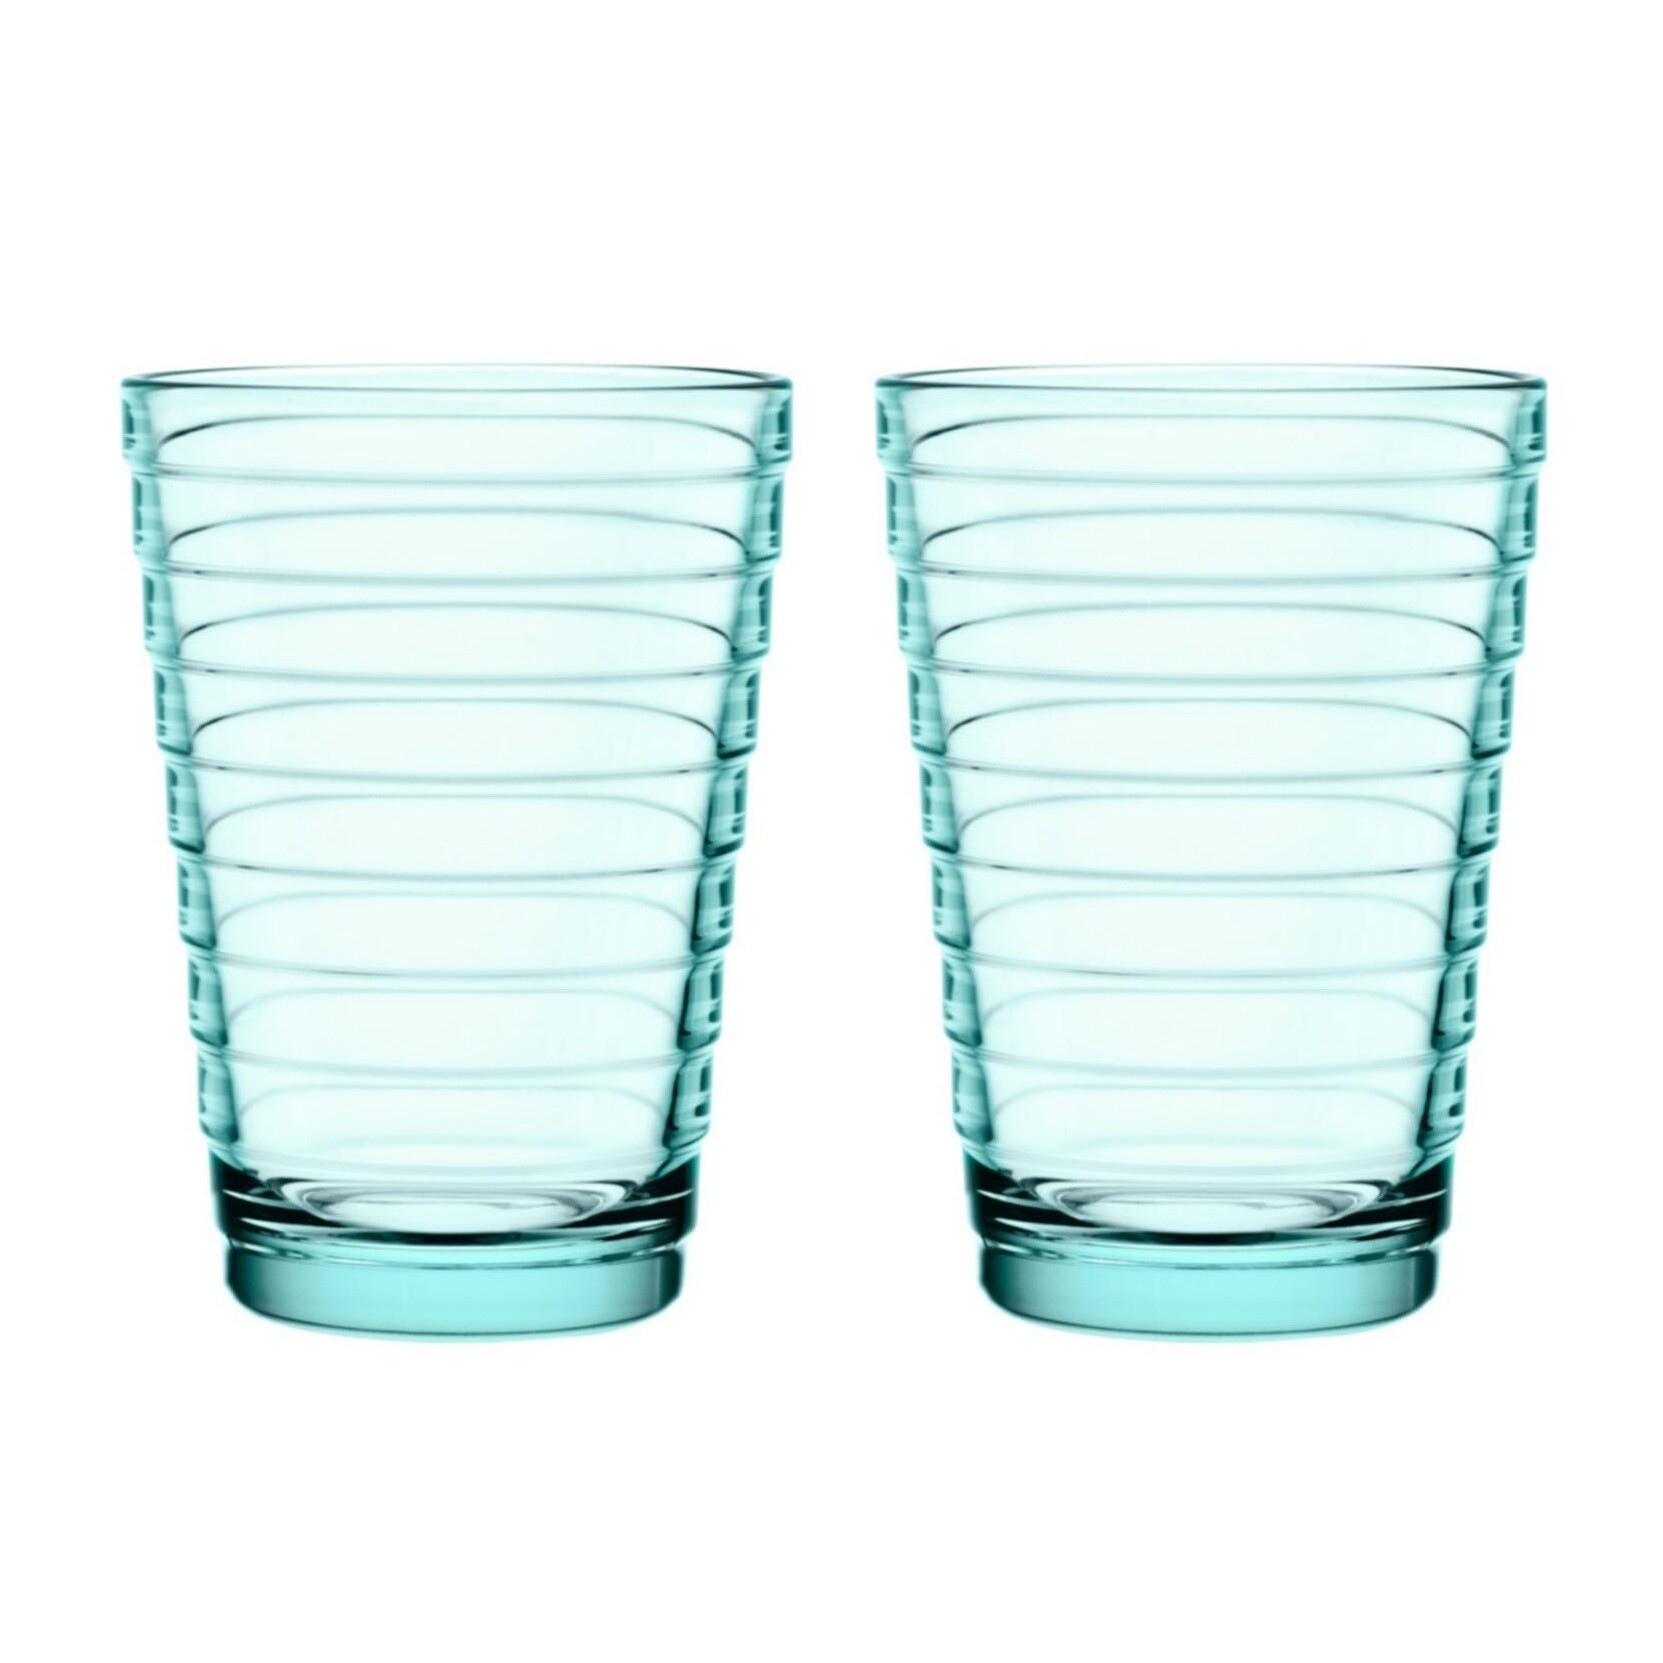 h 11 cm Aino Aalto Trinkglas 2er-Set iittala wassergrün ø 8,1 cm